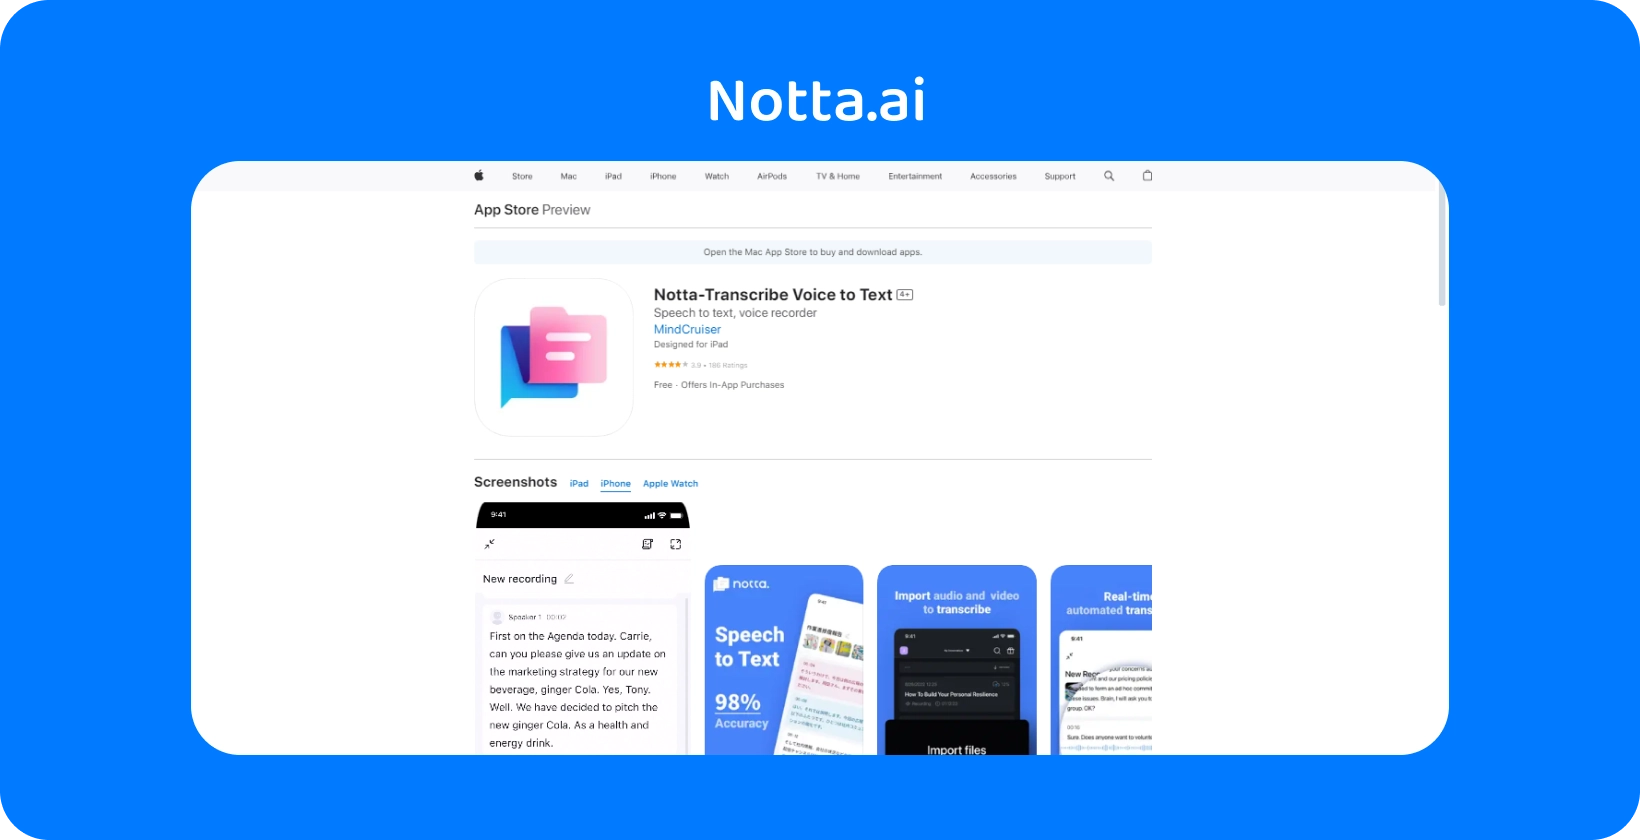 L’aperçu de l’App Store de Nota.ai avec de nouvelles fonctionnalités pour convertir la voix en texte avec une précision AI présentée.